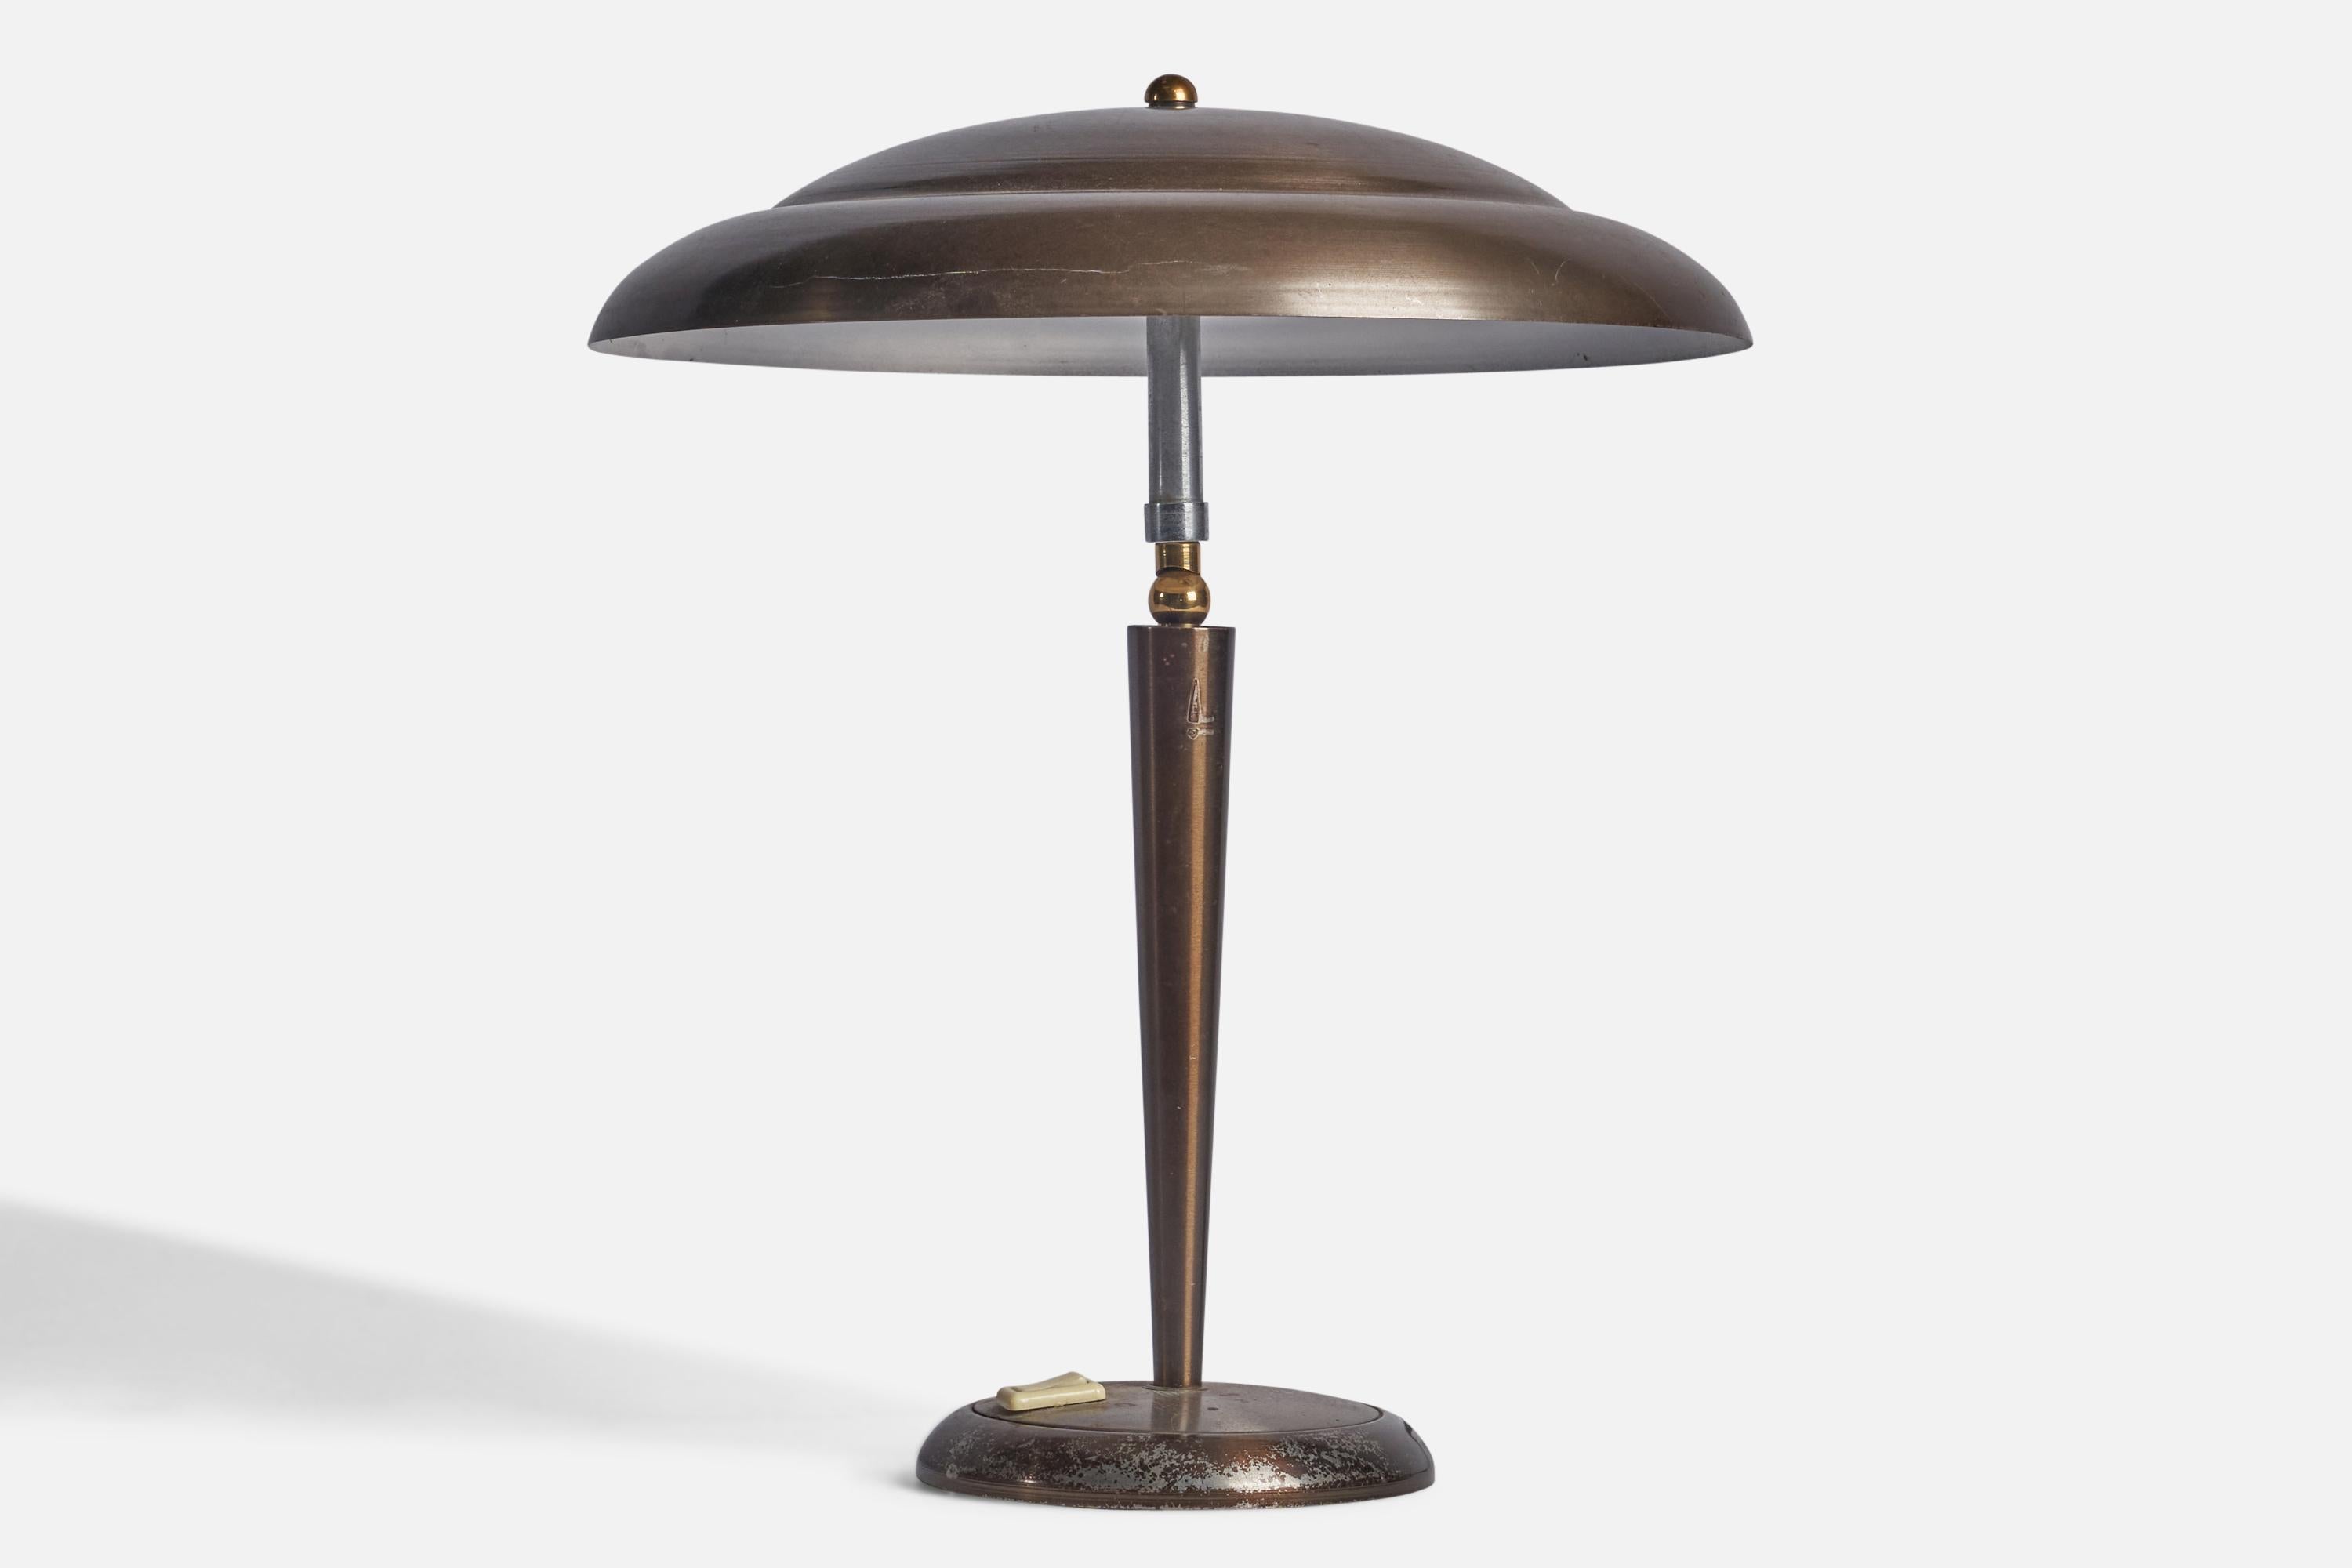 Lampe de table réglable conçue et produite en Italie, années 1950.

Dimensions globales (pouces) : 16